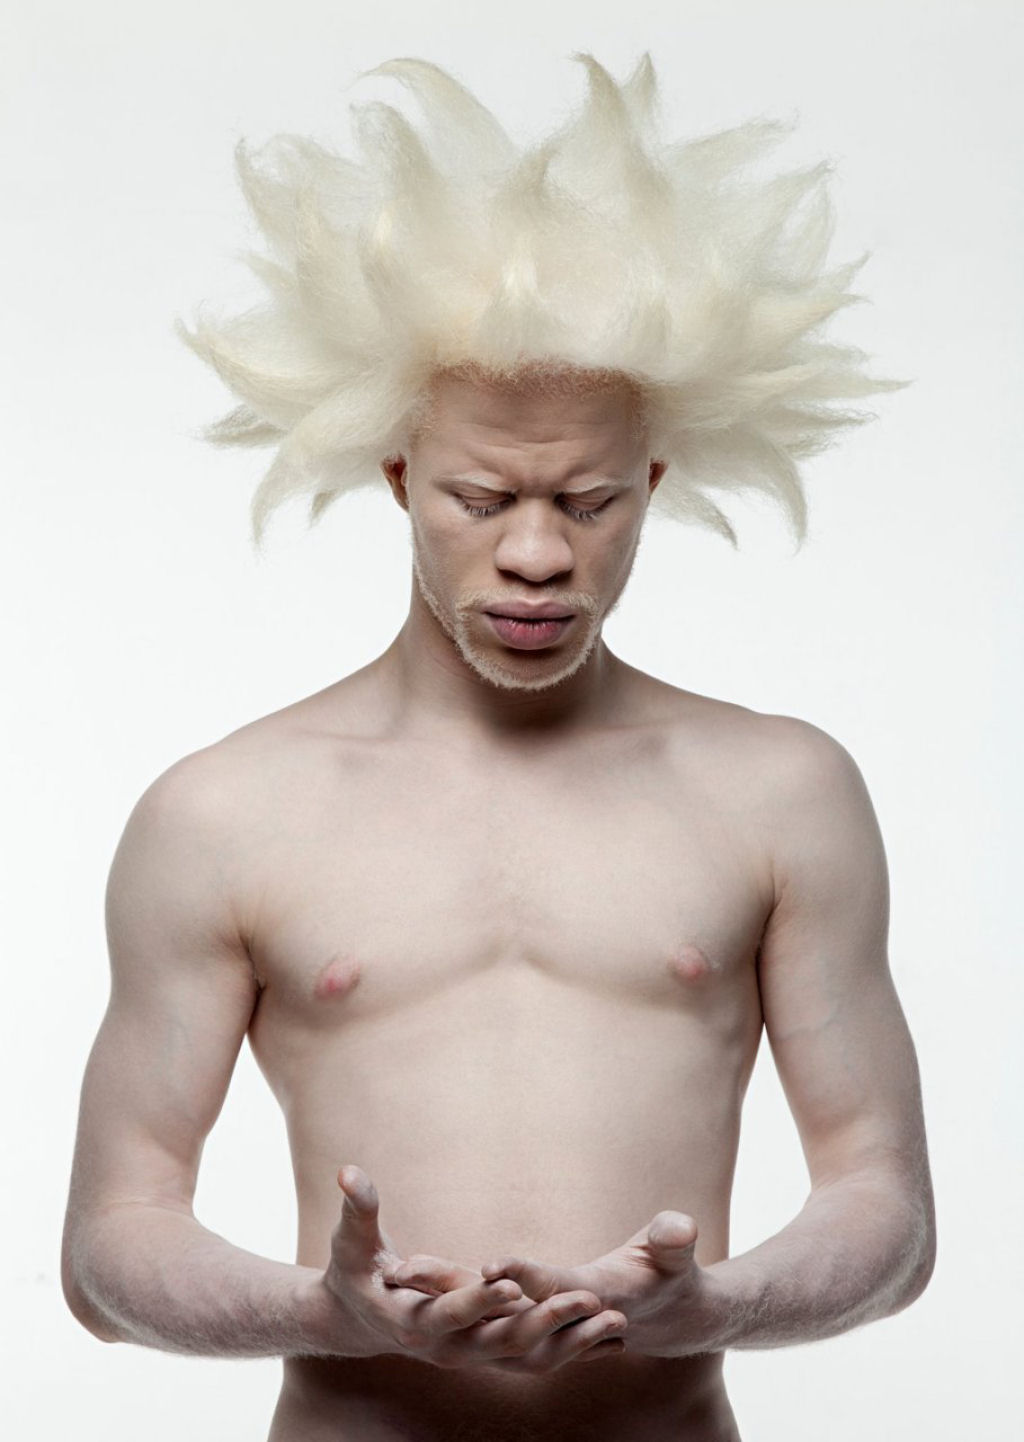 22 pessoas albinas que vo hipnotiz-lo com sua beleza de outro mundo 16